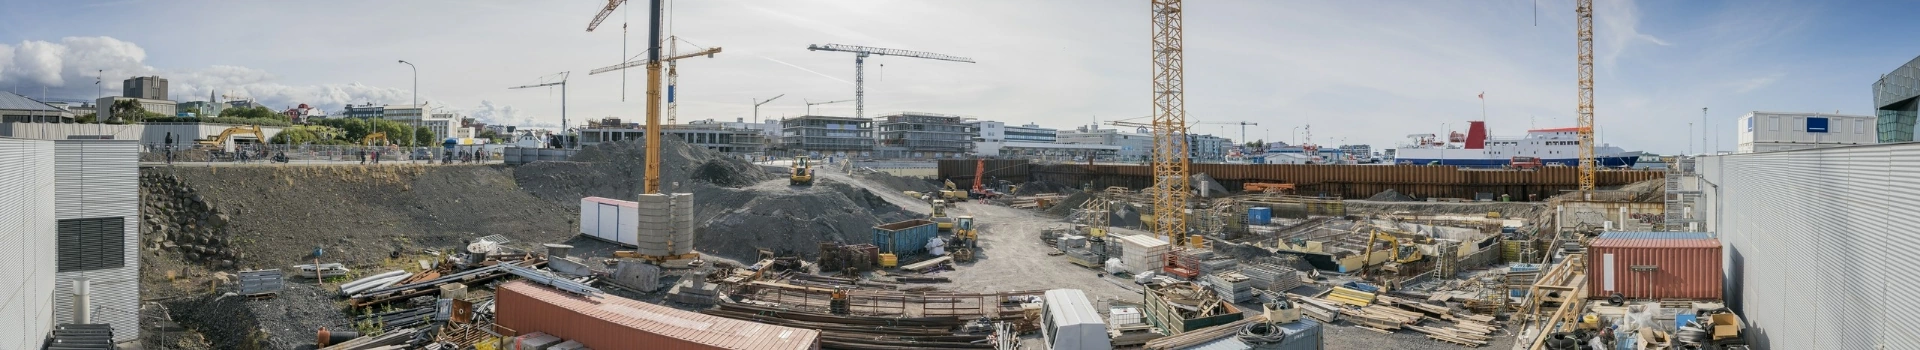 Panorama z widokiem na budowę osiedla